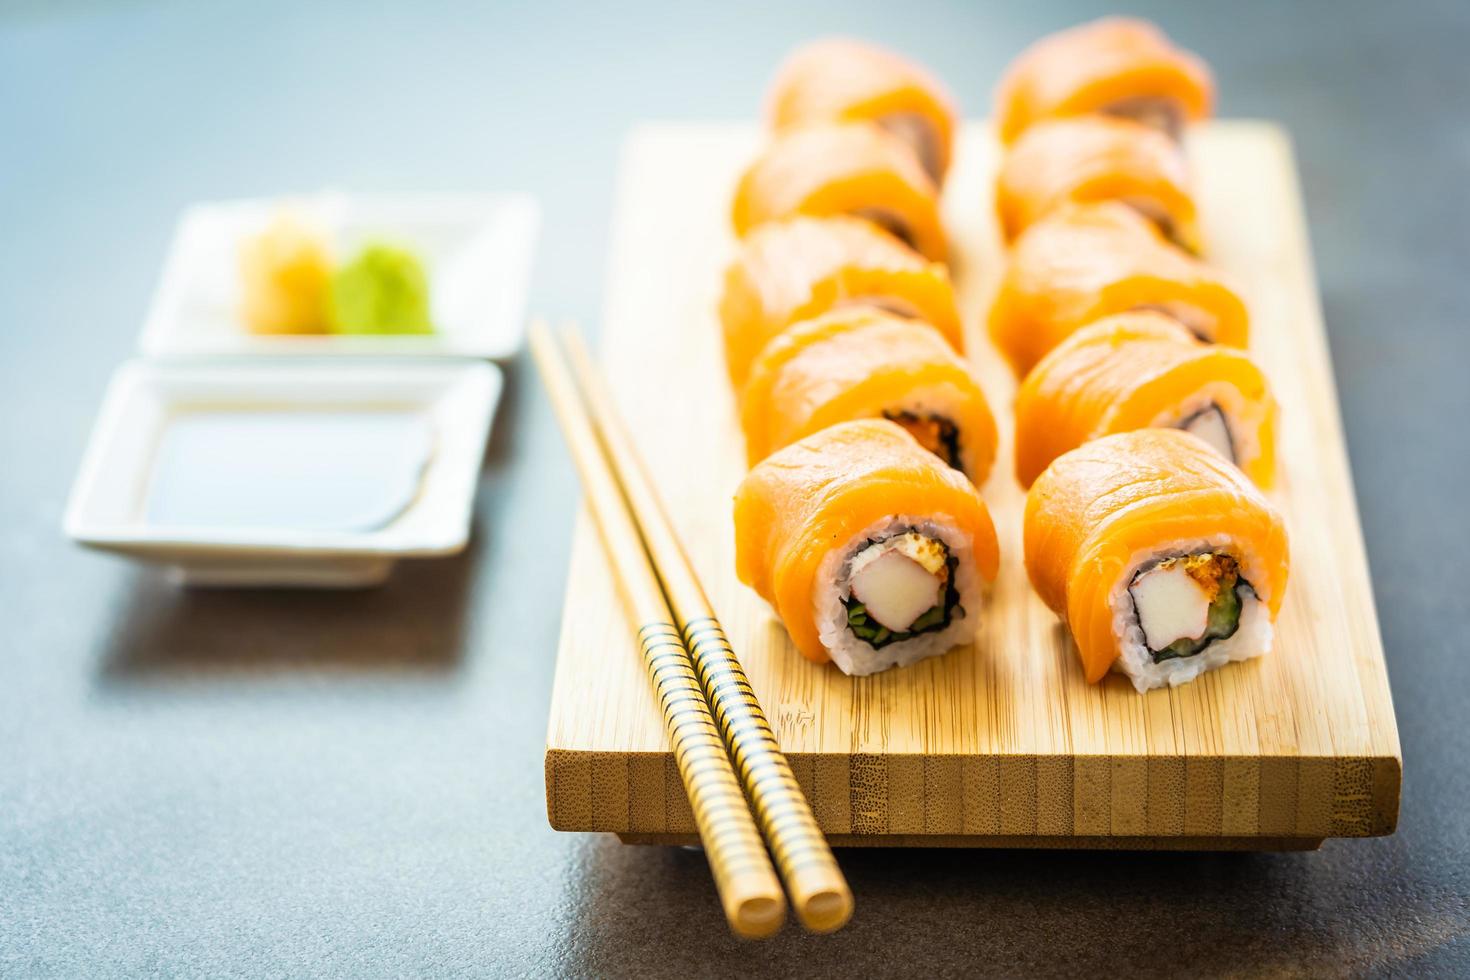 Saumon poisson viande sushi roll maki sur plaque de bois photo